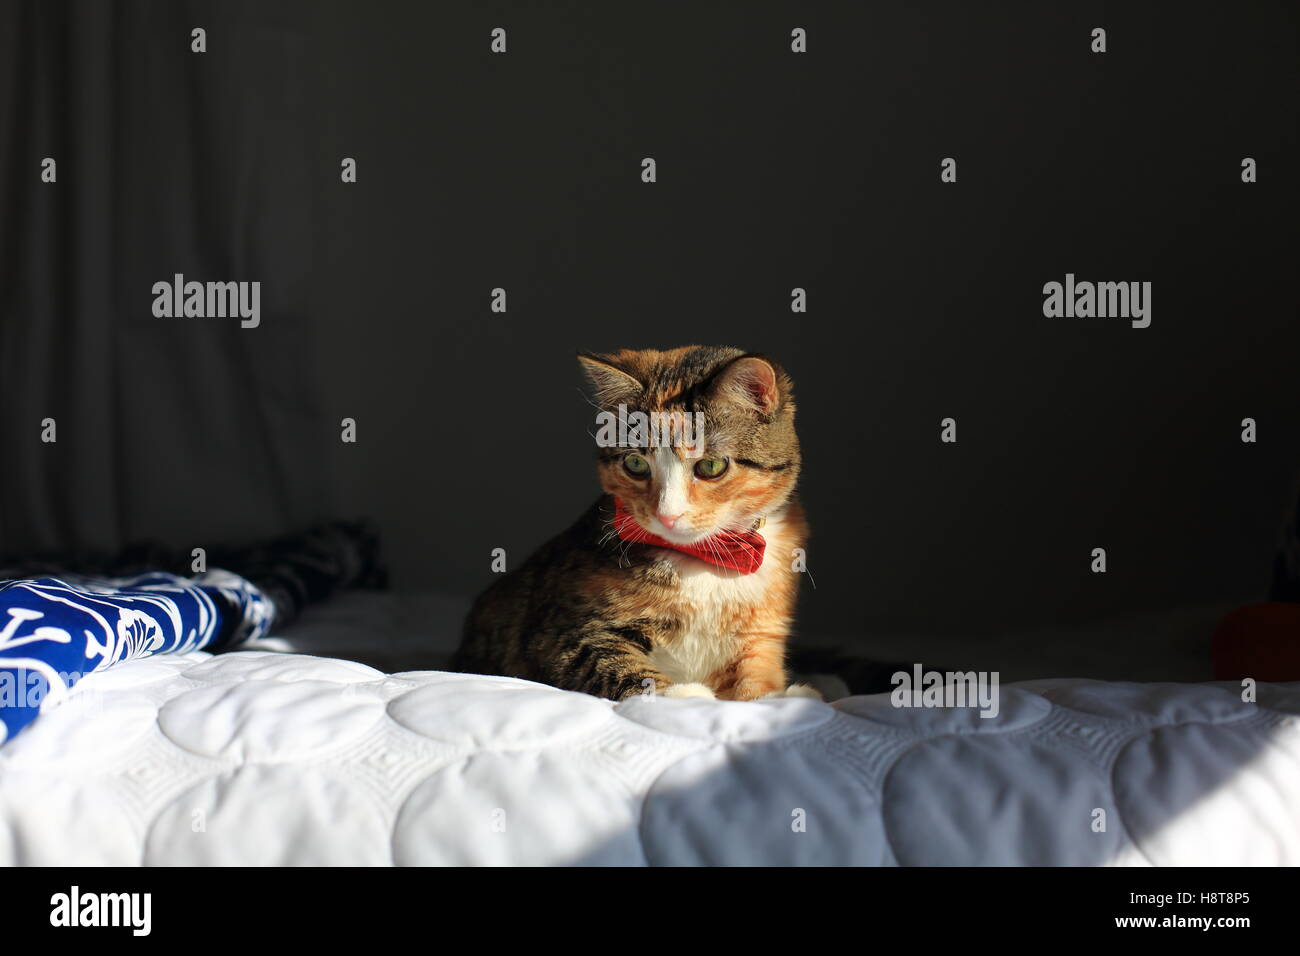 Eine Orange ruht schwarz-weiß gefleckten Housecat trägt eine Fliege auf einem Bett in dramatisches Licht. Stockfoto